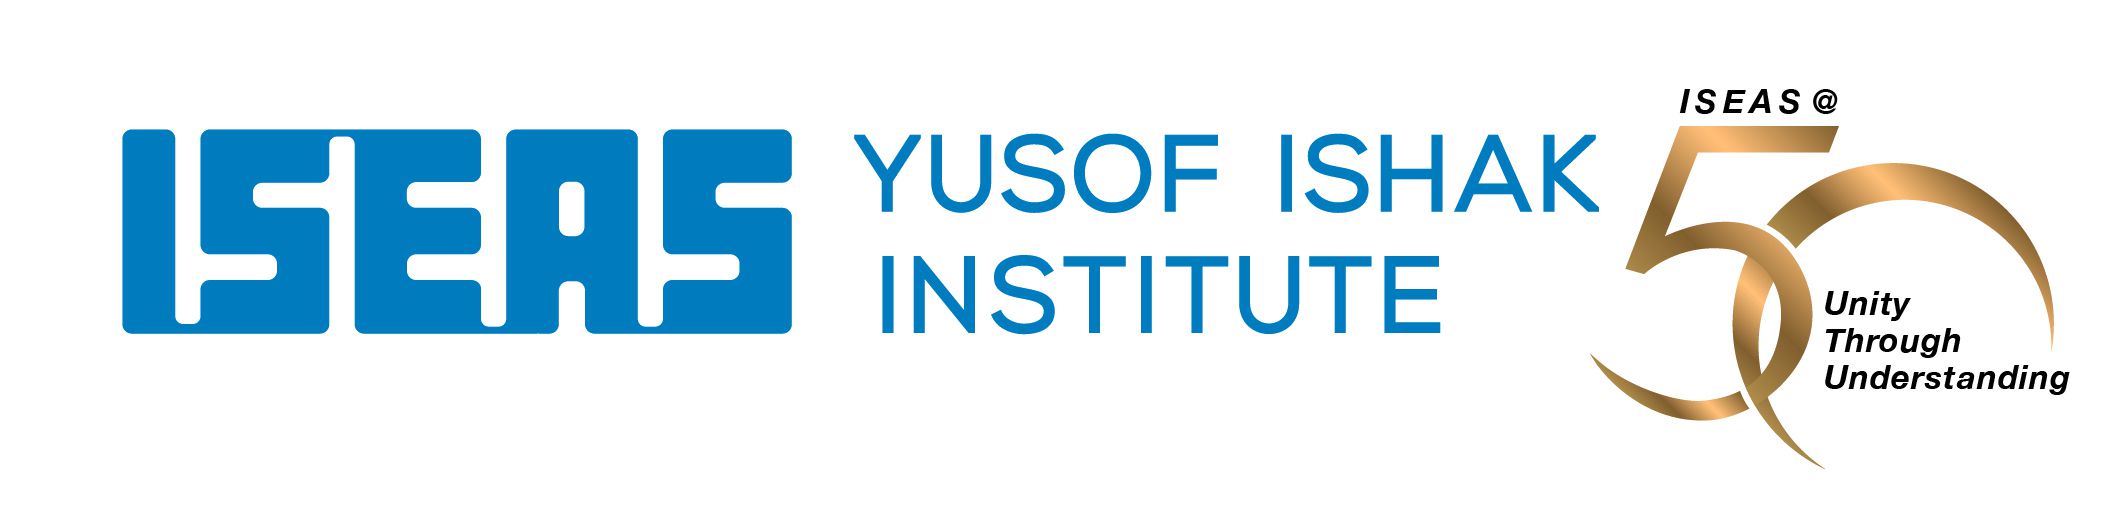 ISEAS Yusof Ishak Institute Singapore Singapore Facebook, 49% OFF